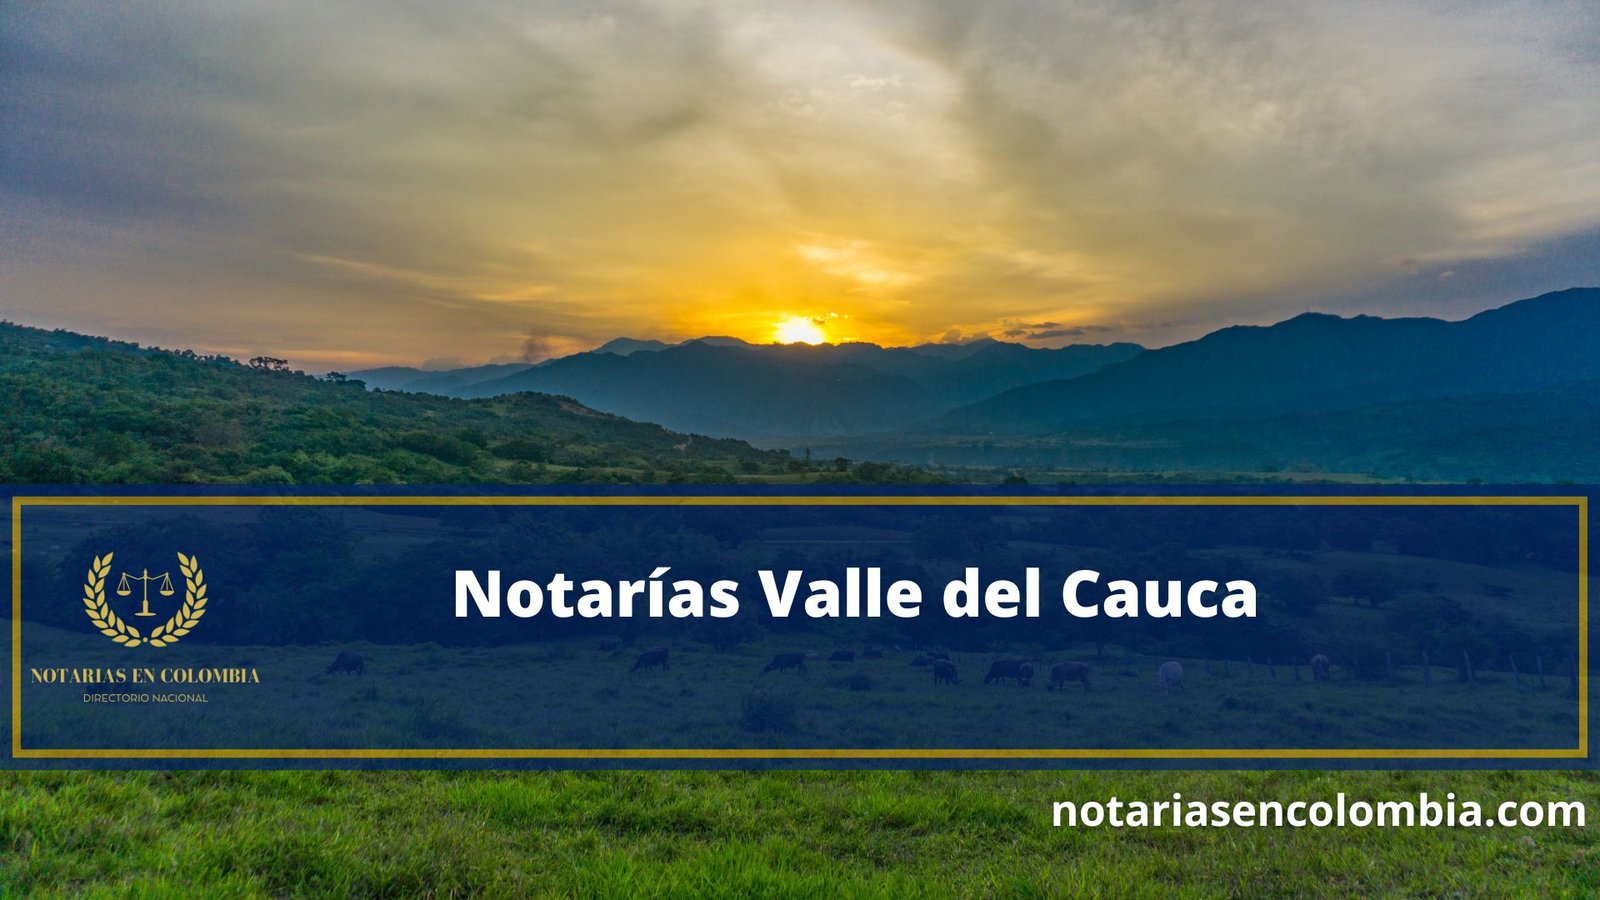 Notarías Valle del Cauca